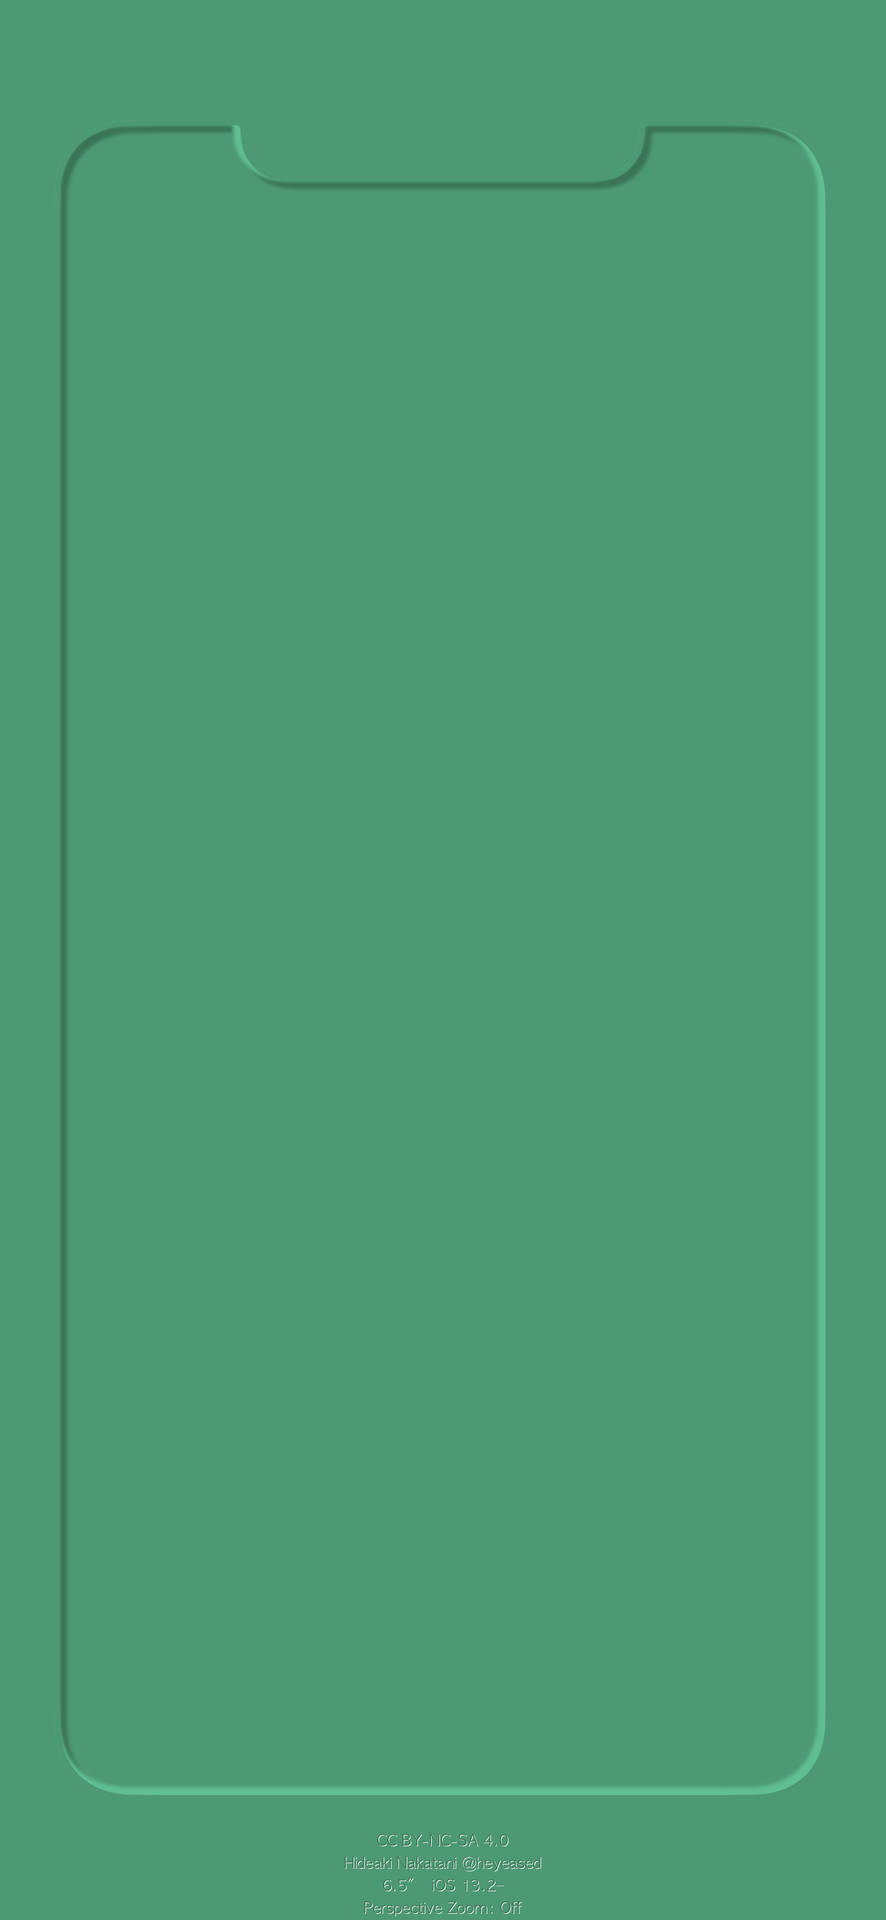 Eingrünes Quadrat Mit Weißem Hintergrund Wallpaper